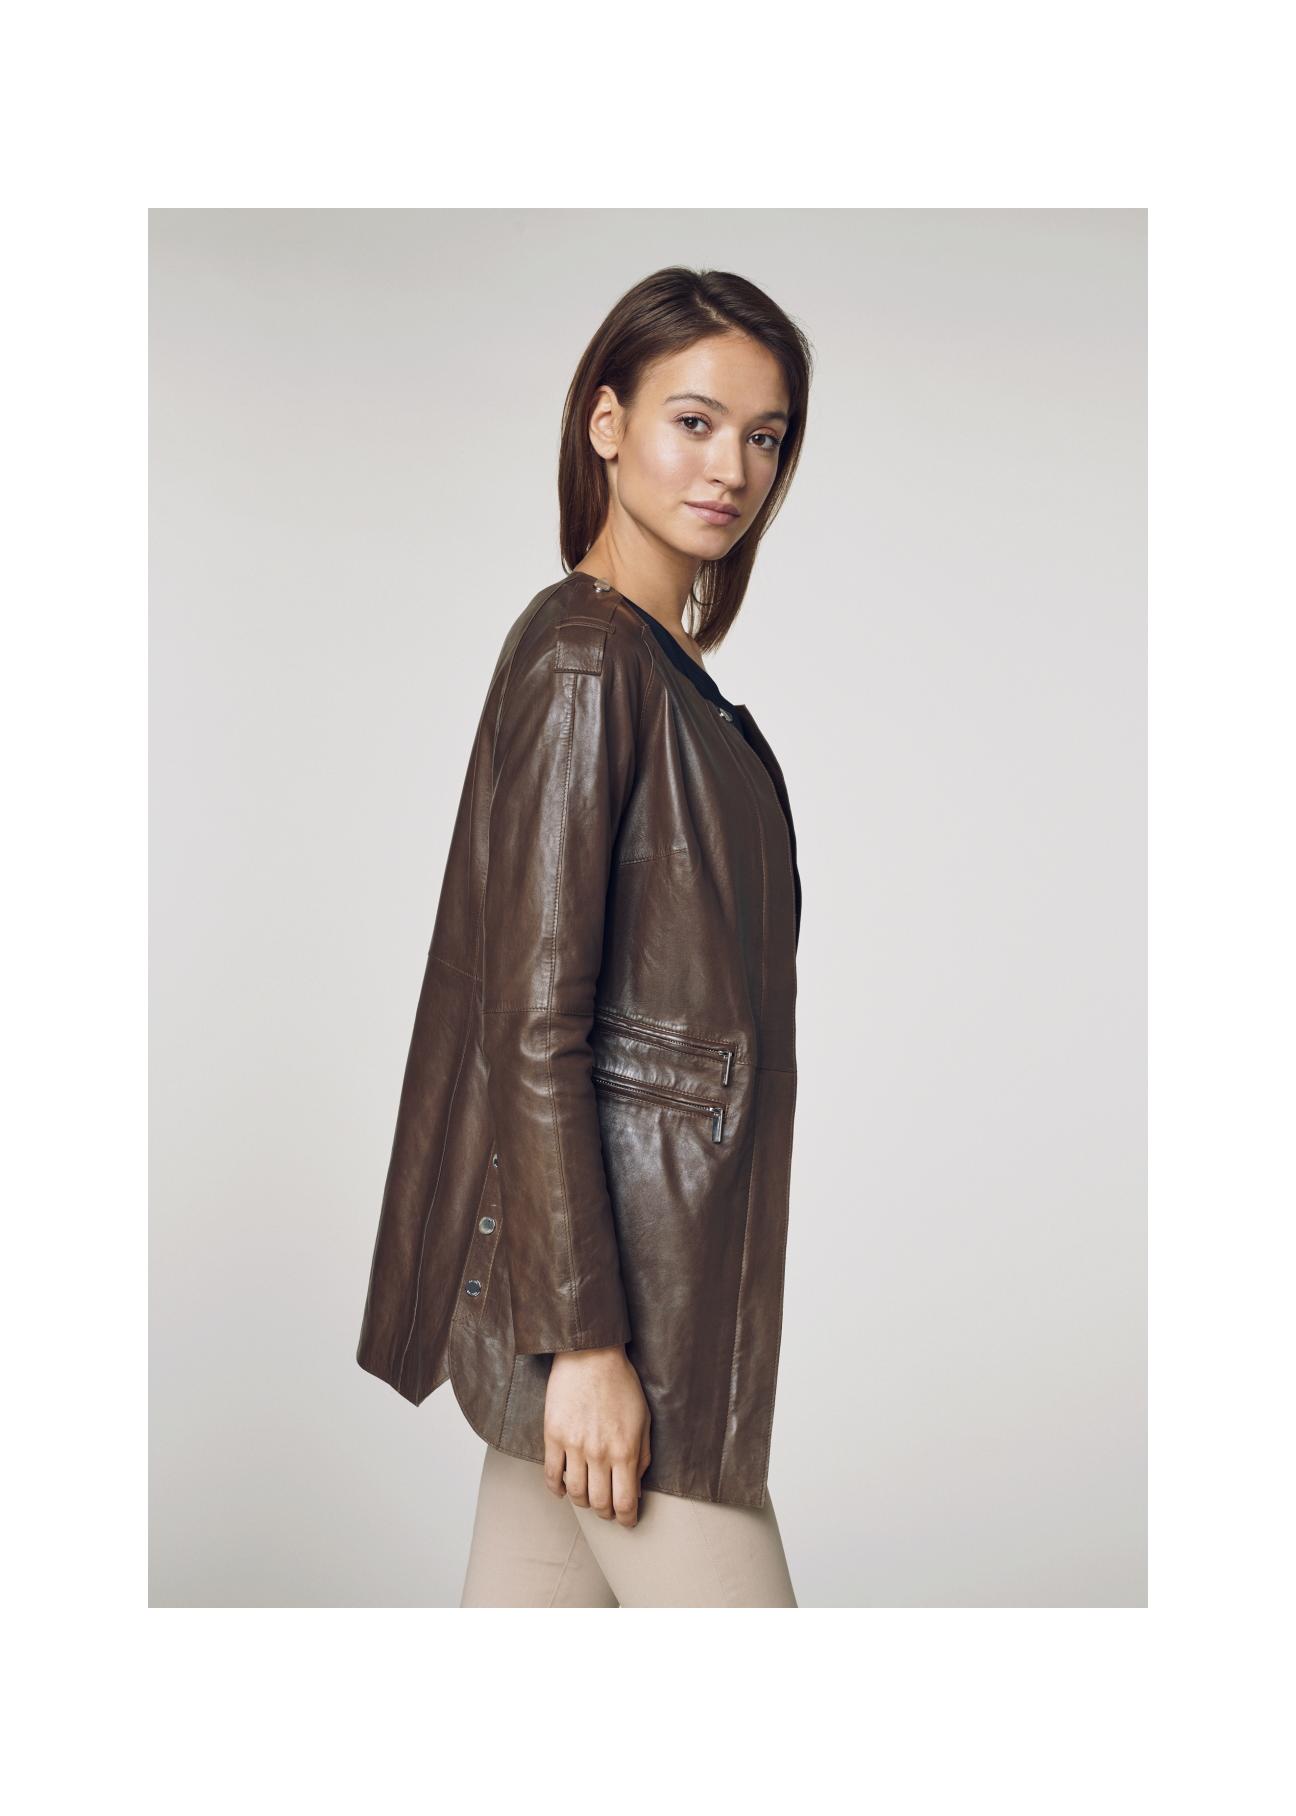 Skórzany brązowy płaszcz damski KURDS-0165-1100(W21)